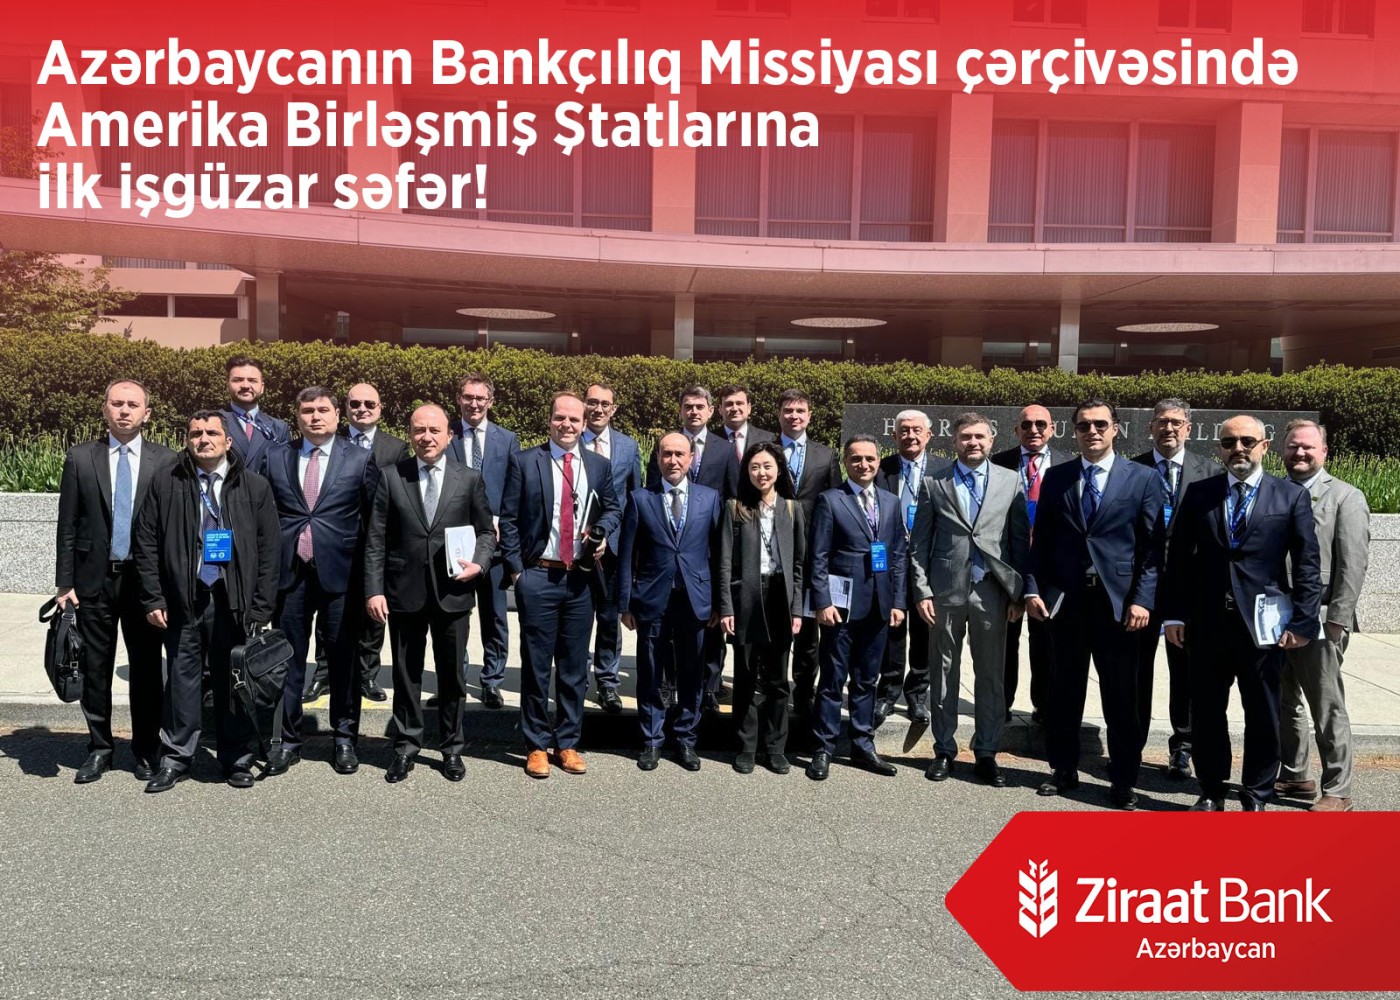 "Ziraat Bank Azərbaycan" ölkəmizin bankçılıq missiyasının ABŞ-yə ilk geniş işgüzar səfərindəiştirak edib - FOTO